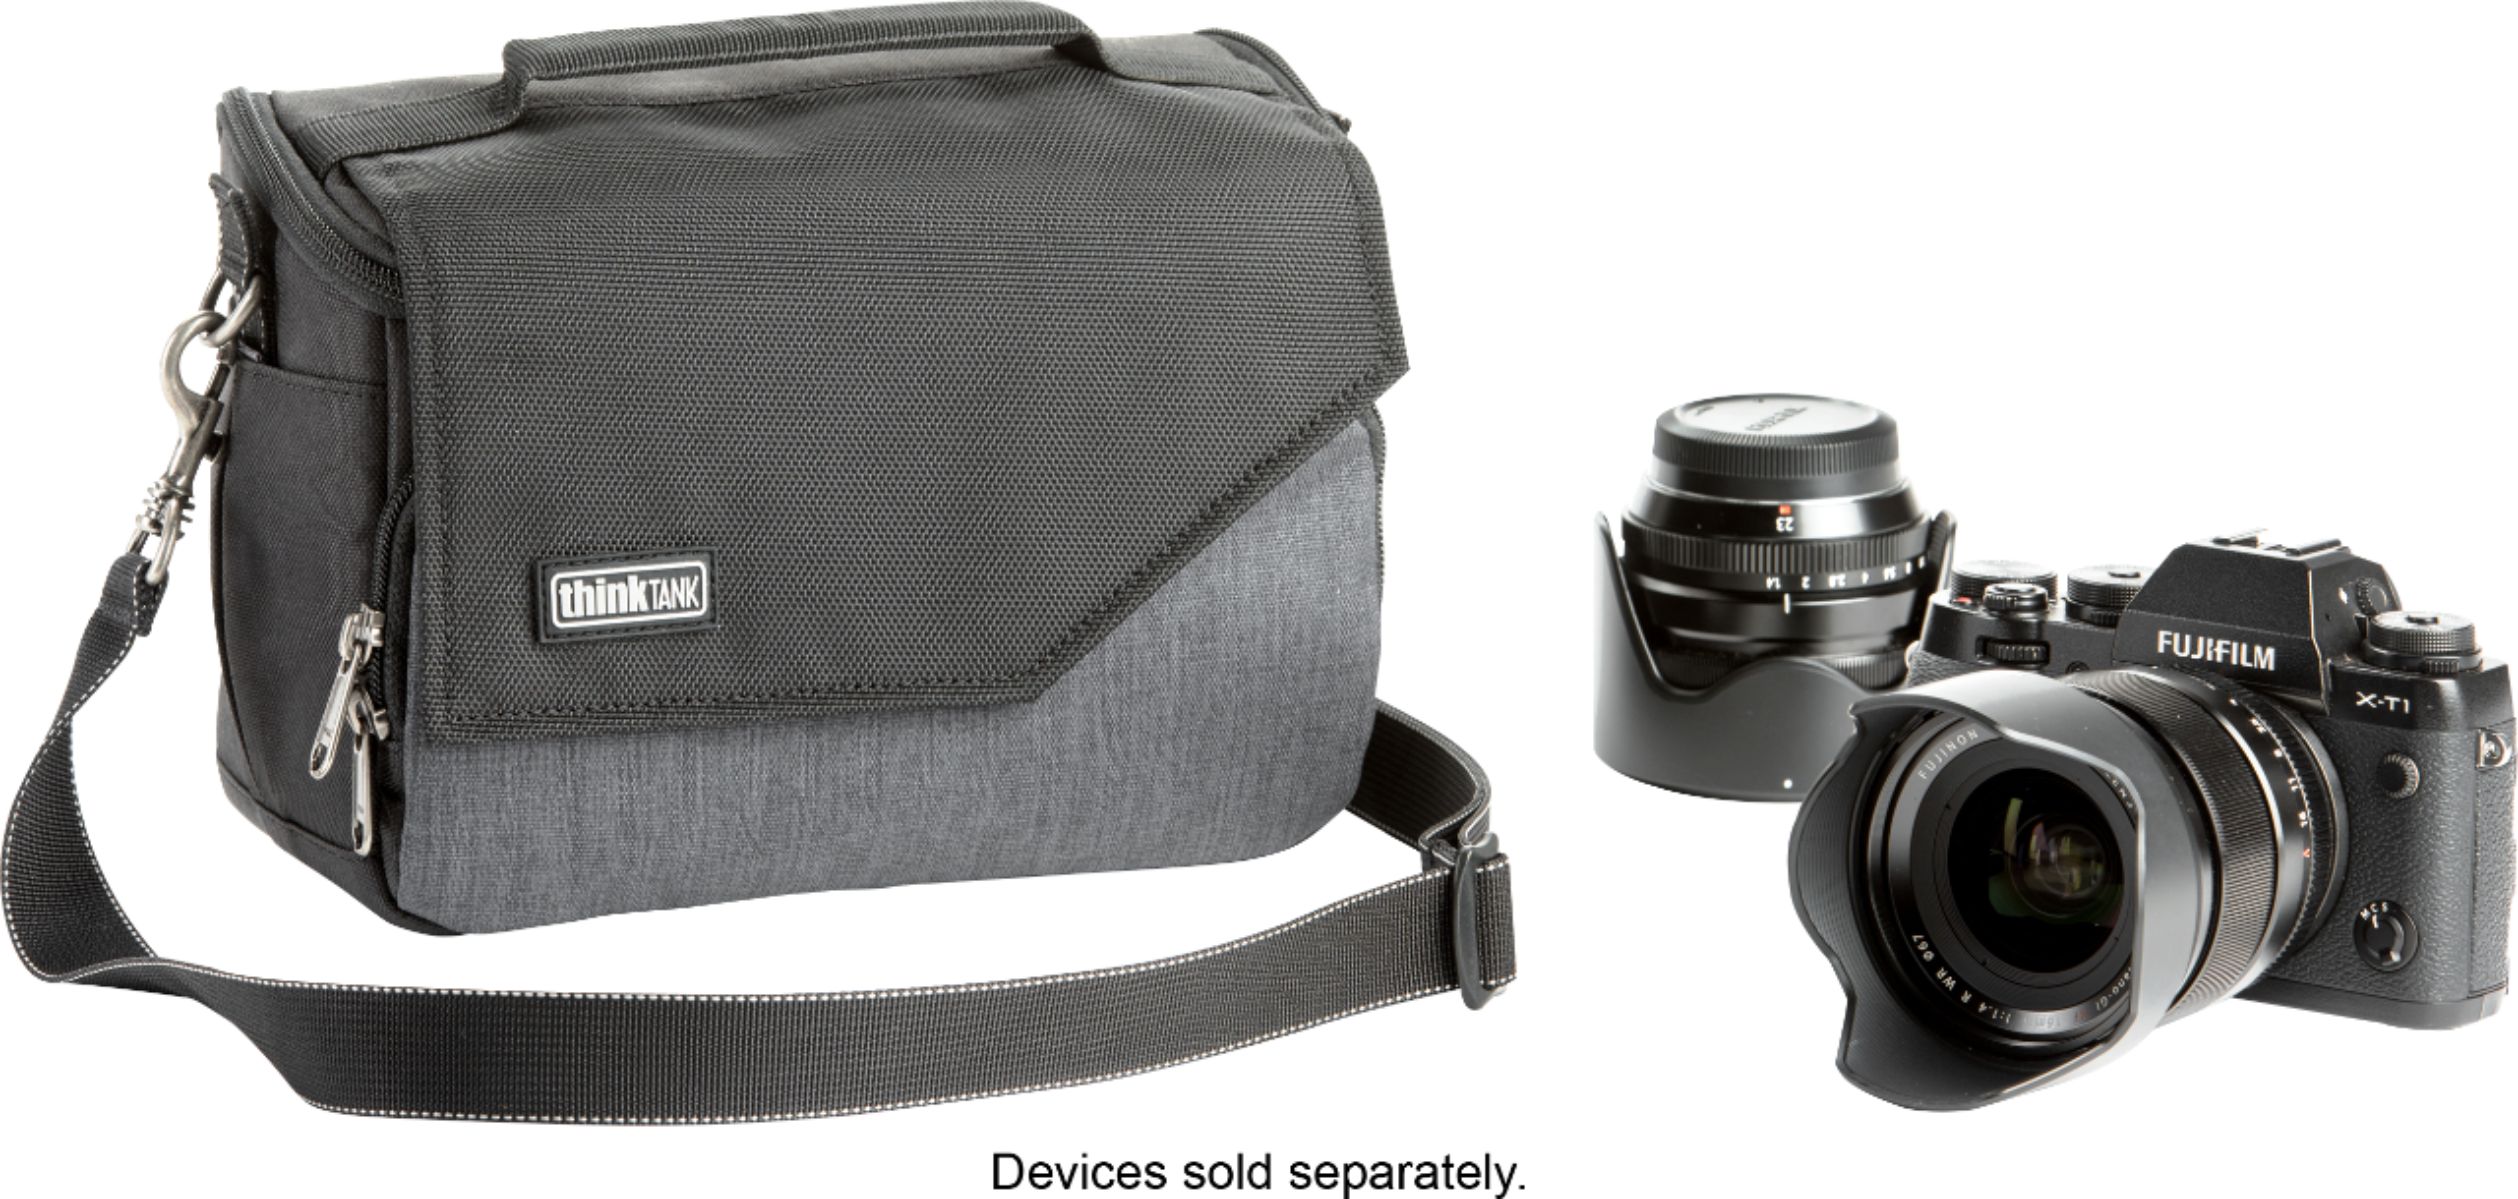 Angle View: thinkTank - Mirrorless Mover Camera Shoulder Bag - Gray/Black